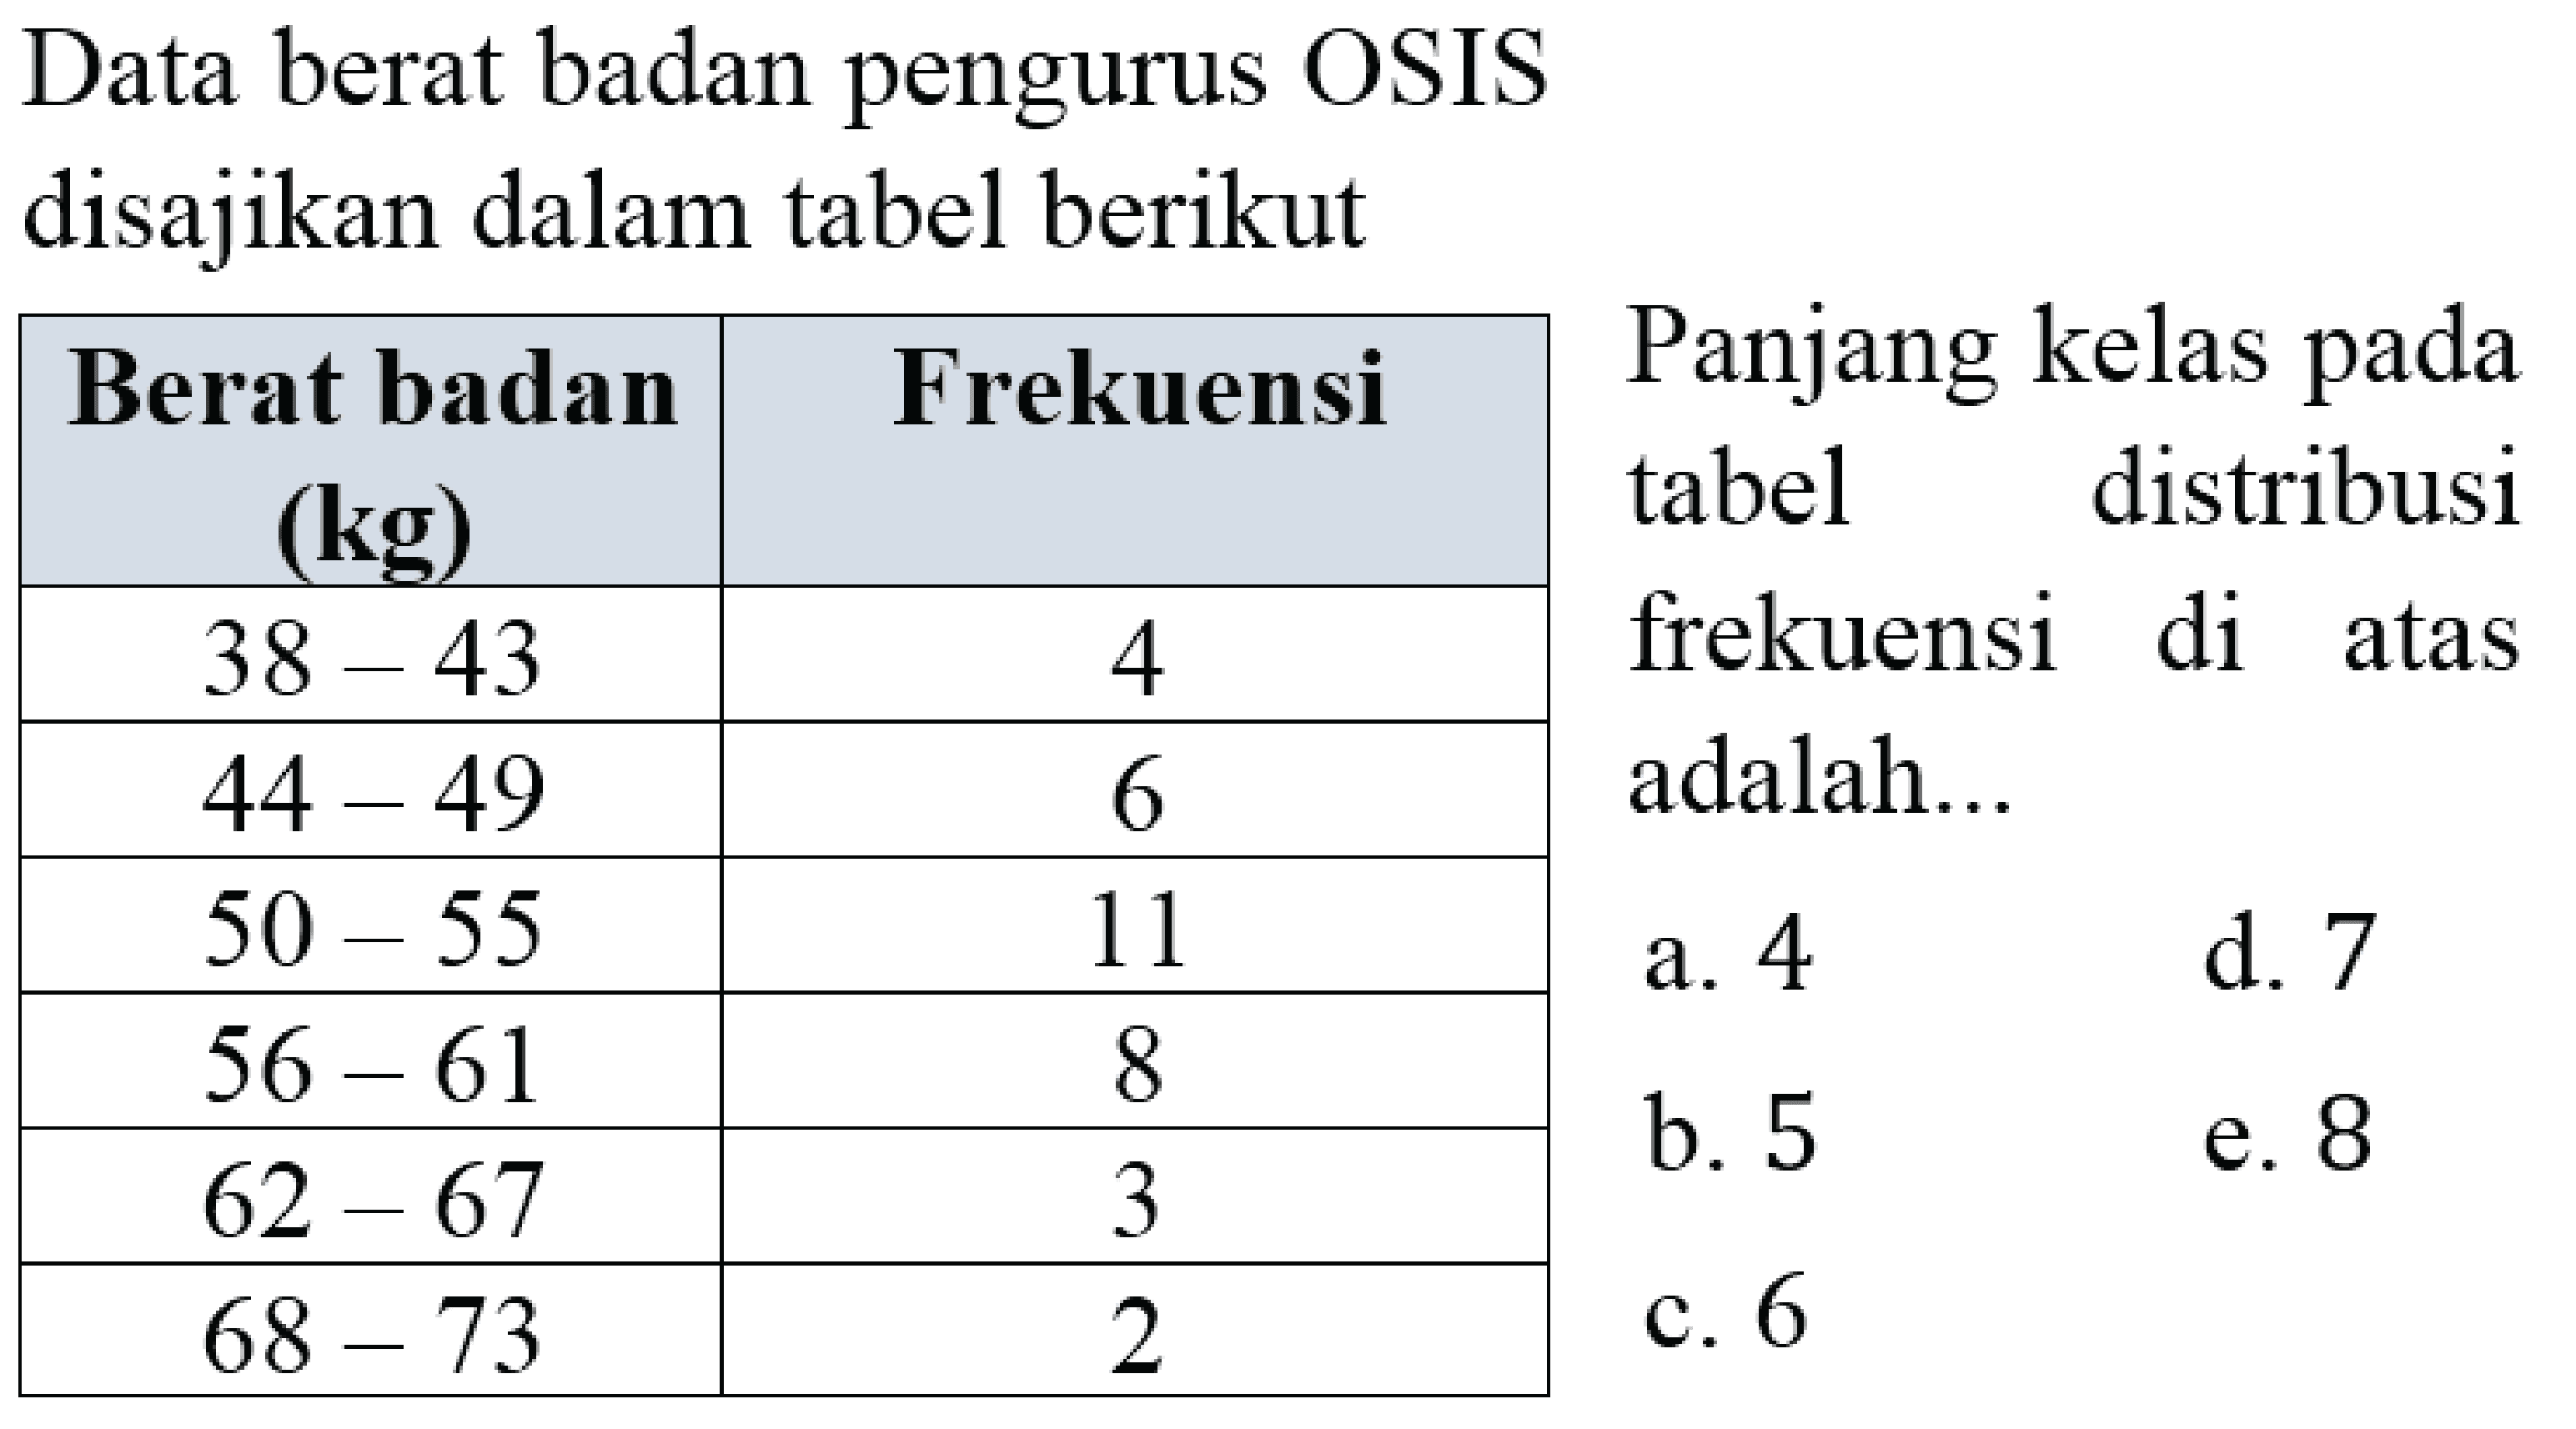 Data berat badan pengurus OSIS disajikan dalam tabel berikut 
Berat badan (kg) Frekuensi 
38-43 4 
44-49 6 
50-55 11 
56-61 8 
62-67 3 
68-73 2  
Panjang kelas pada tabel distribusi frekuensi di atas adalah 